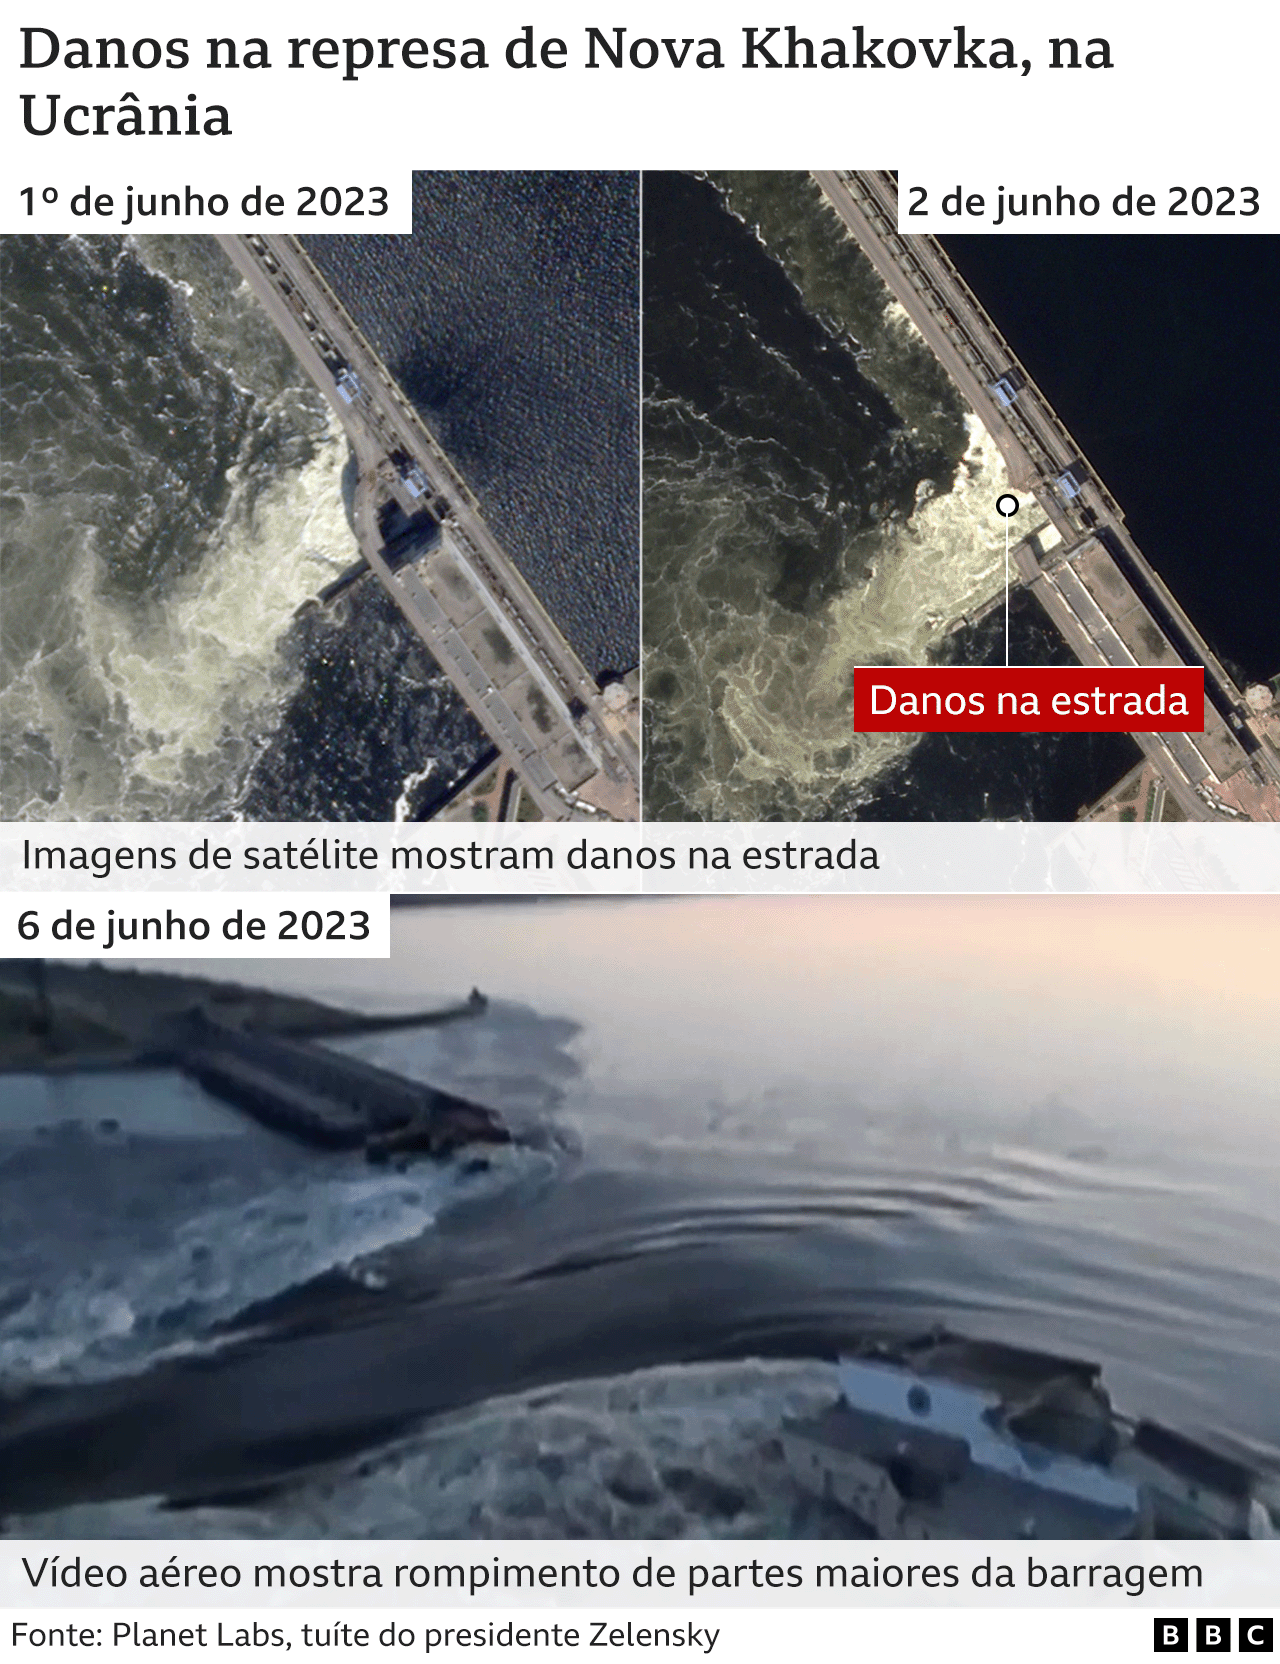 Imagens de satélite mostram danos à barragem antes do rompimento em 6 de junho